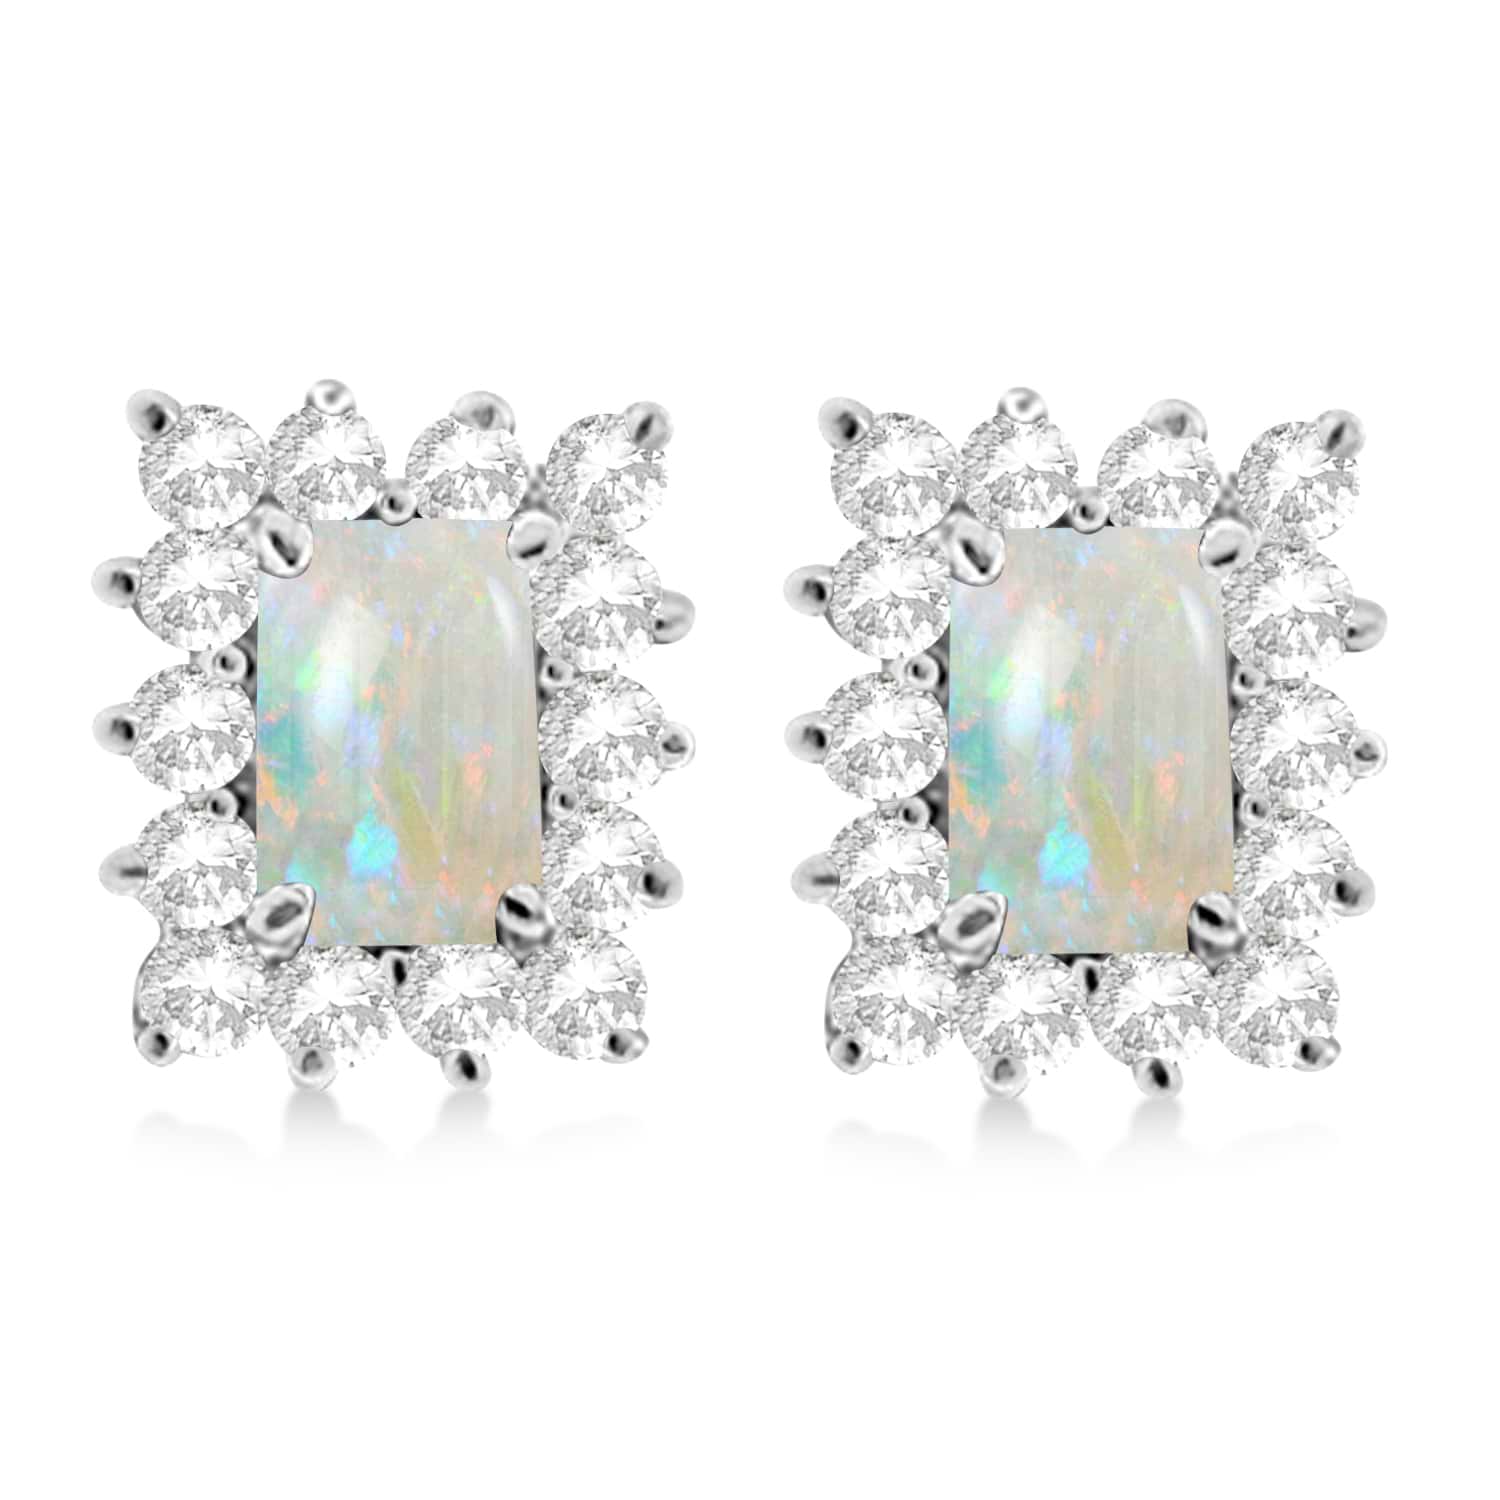 Emerald-Cut Opal & Diamond Stud Earrings 14k White Gold (1.80ctw)